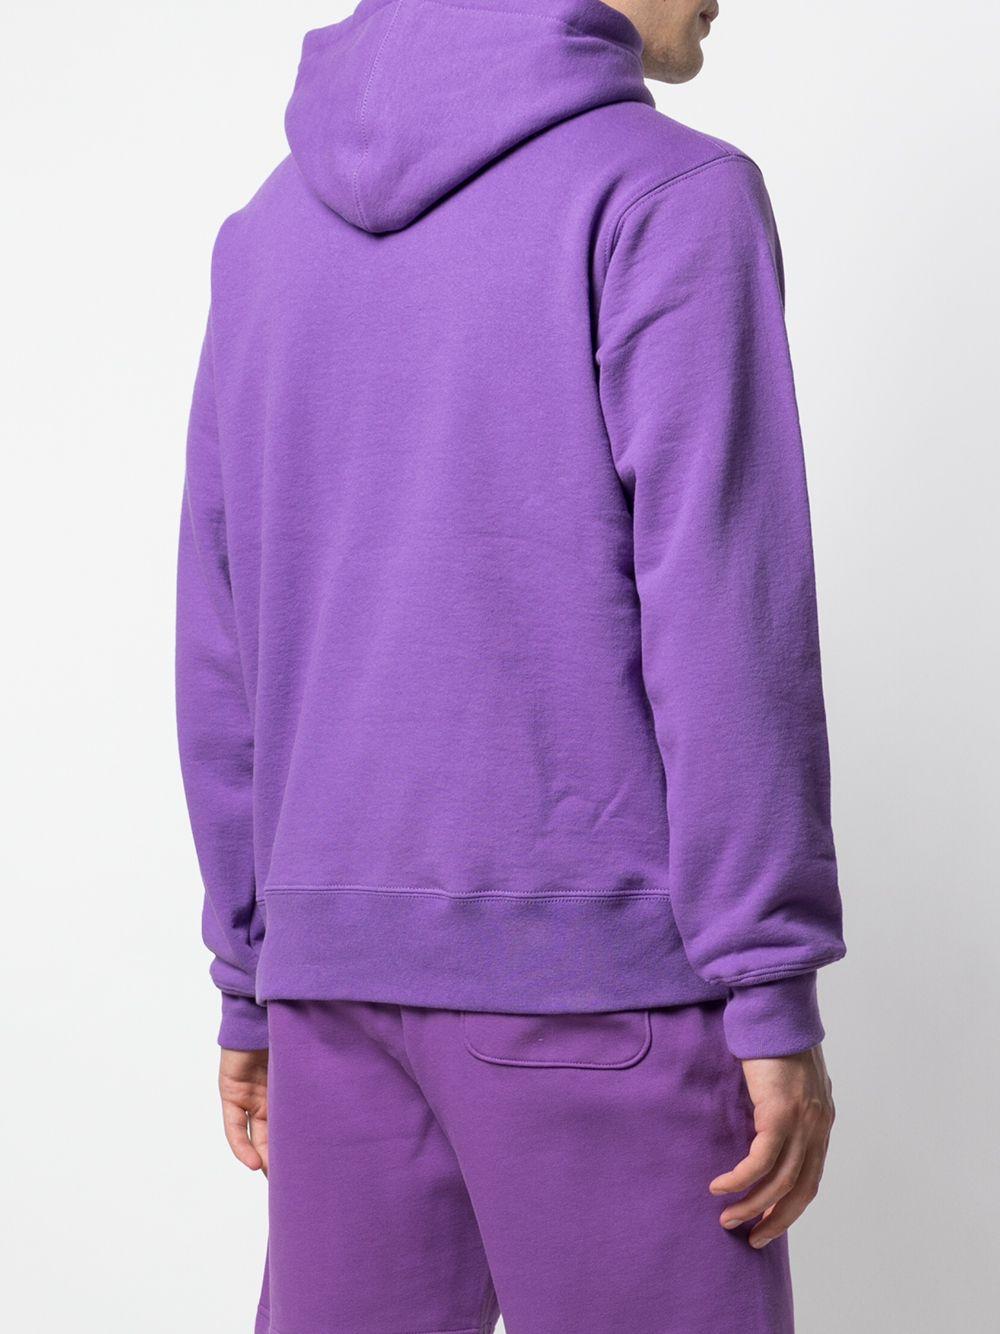 Supreme Marvin Gaye Hooded Sweatshirt in Purple for Men - Lyst